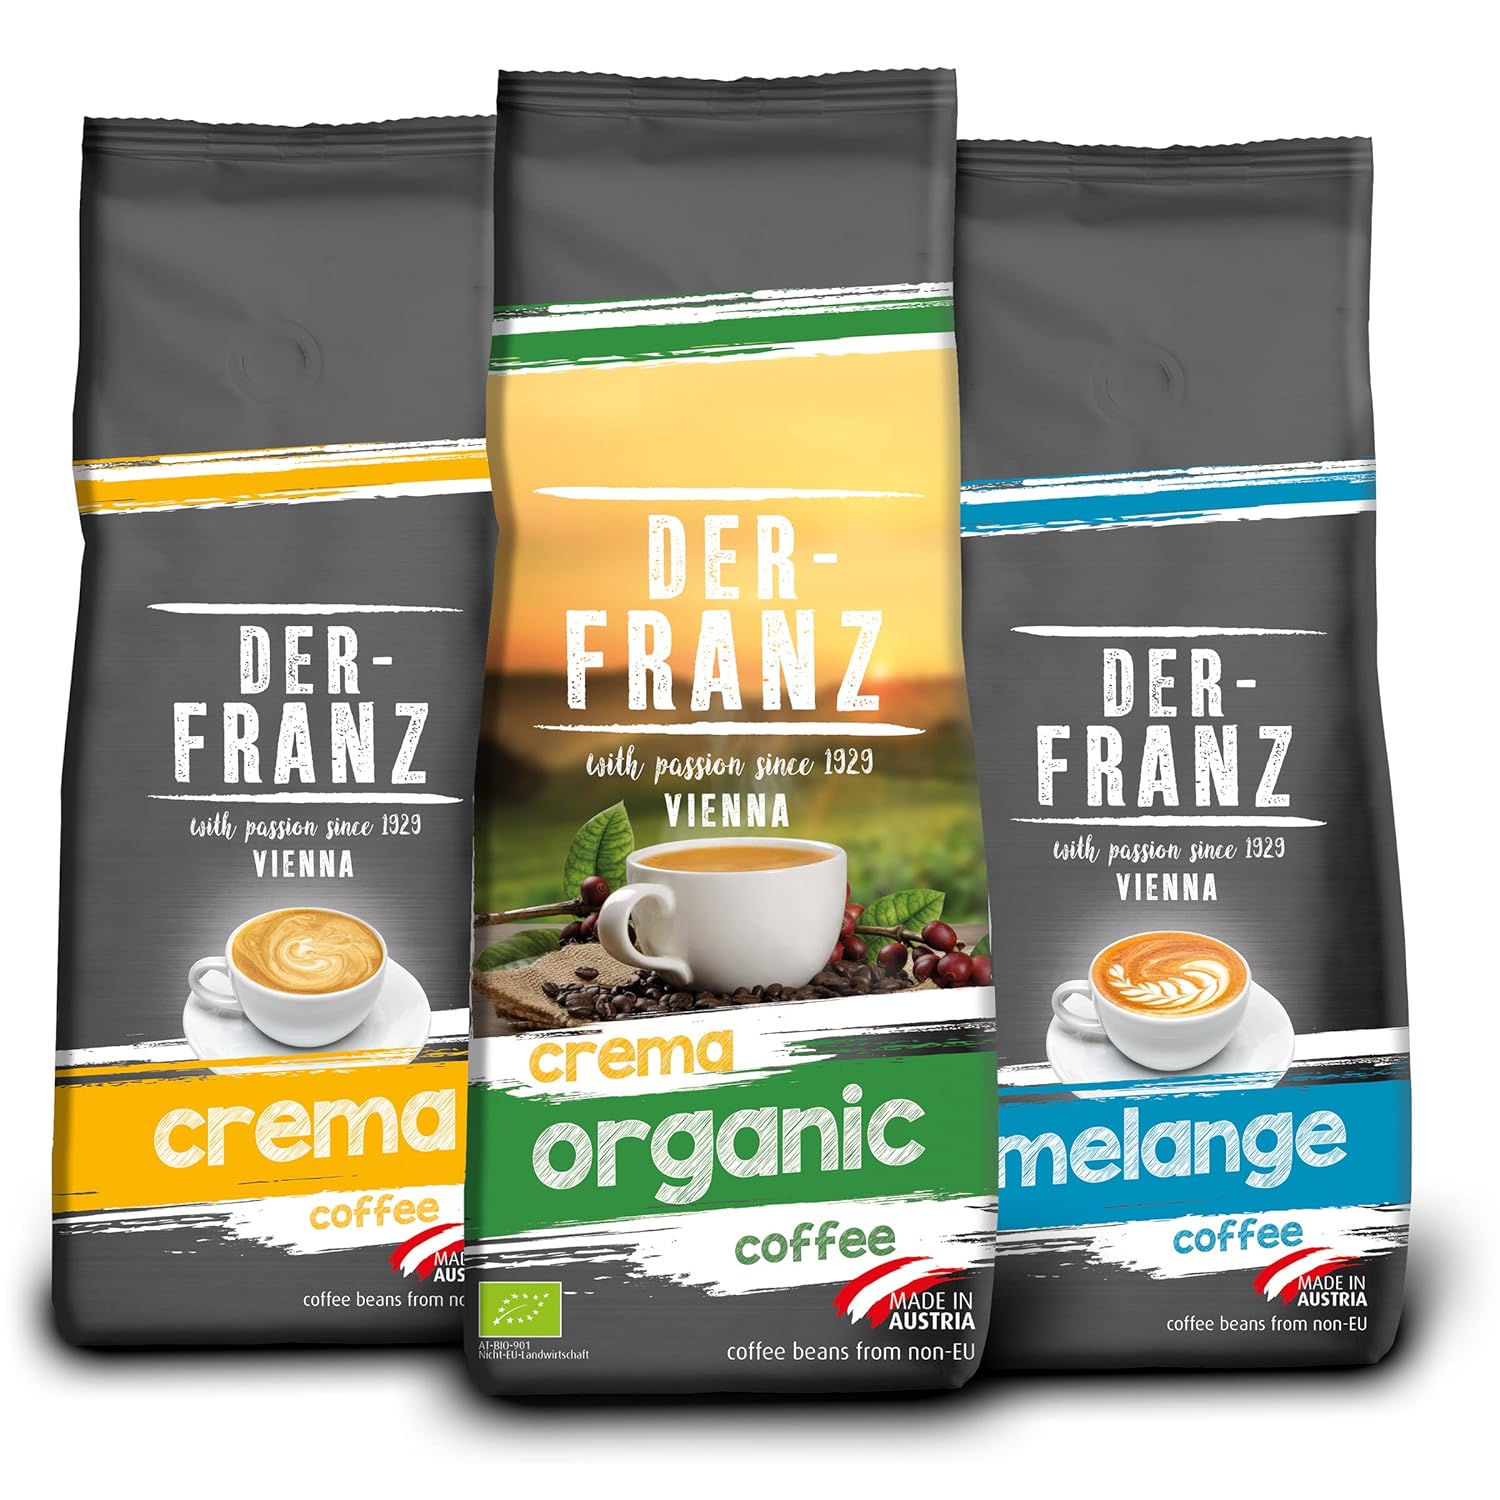 Der-Franz Ground Coffee Pack, 3 x 500 g, (1 x Crema, 1 x Melange, 1 x Crema Organic)